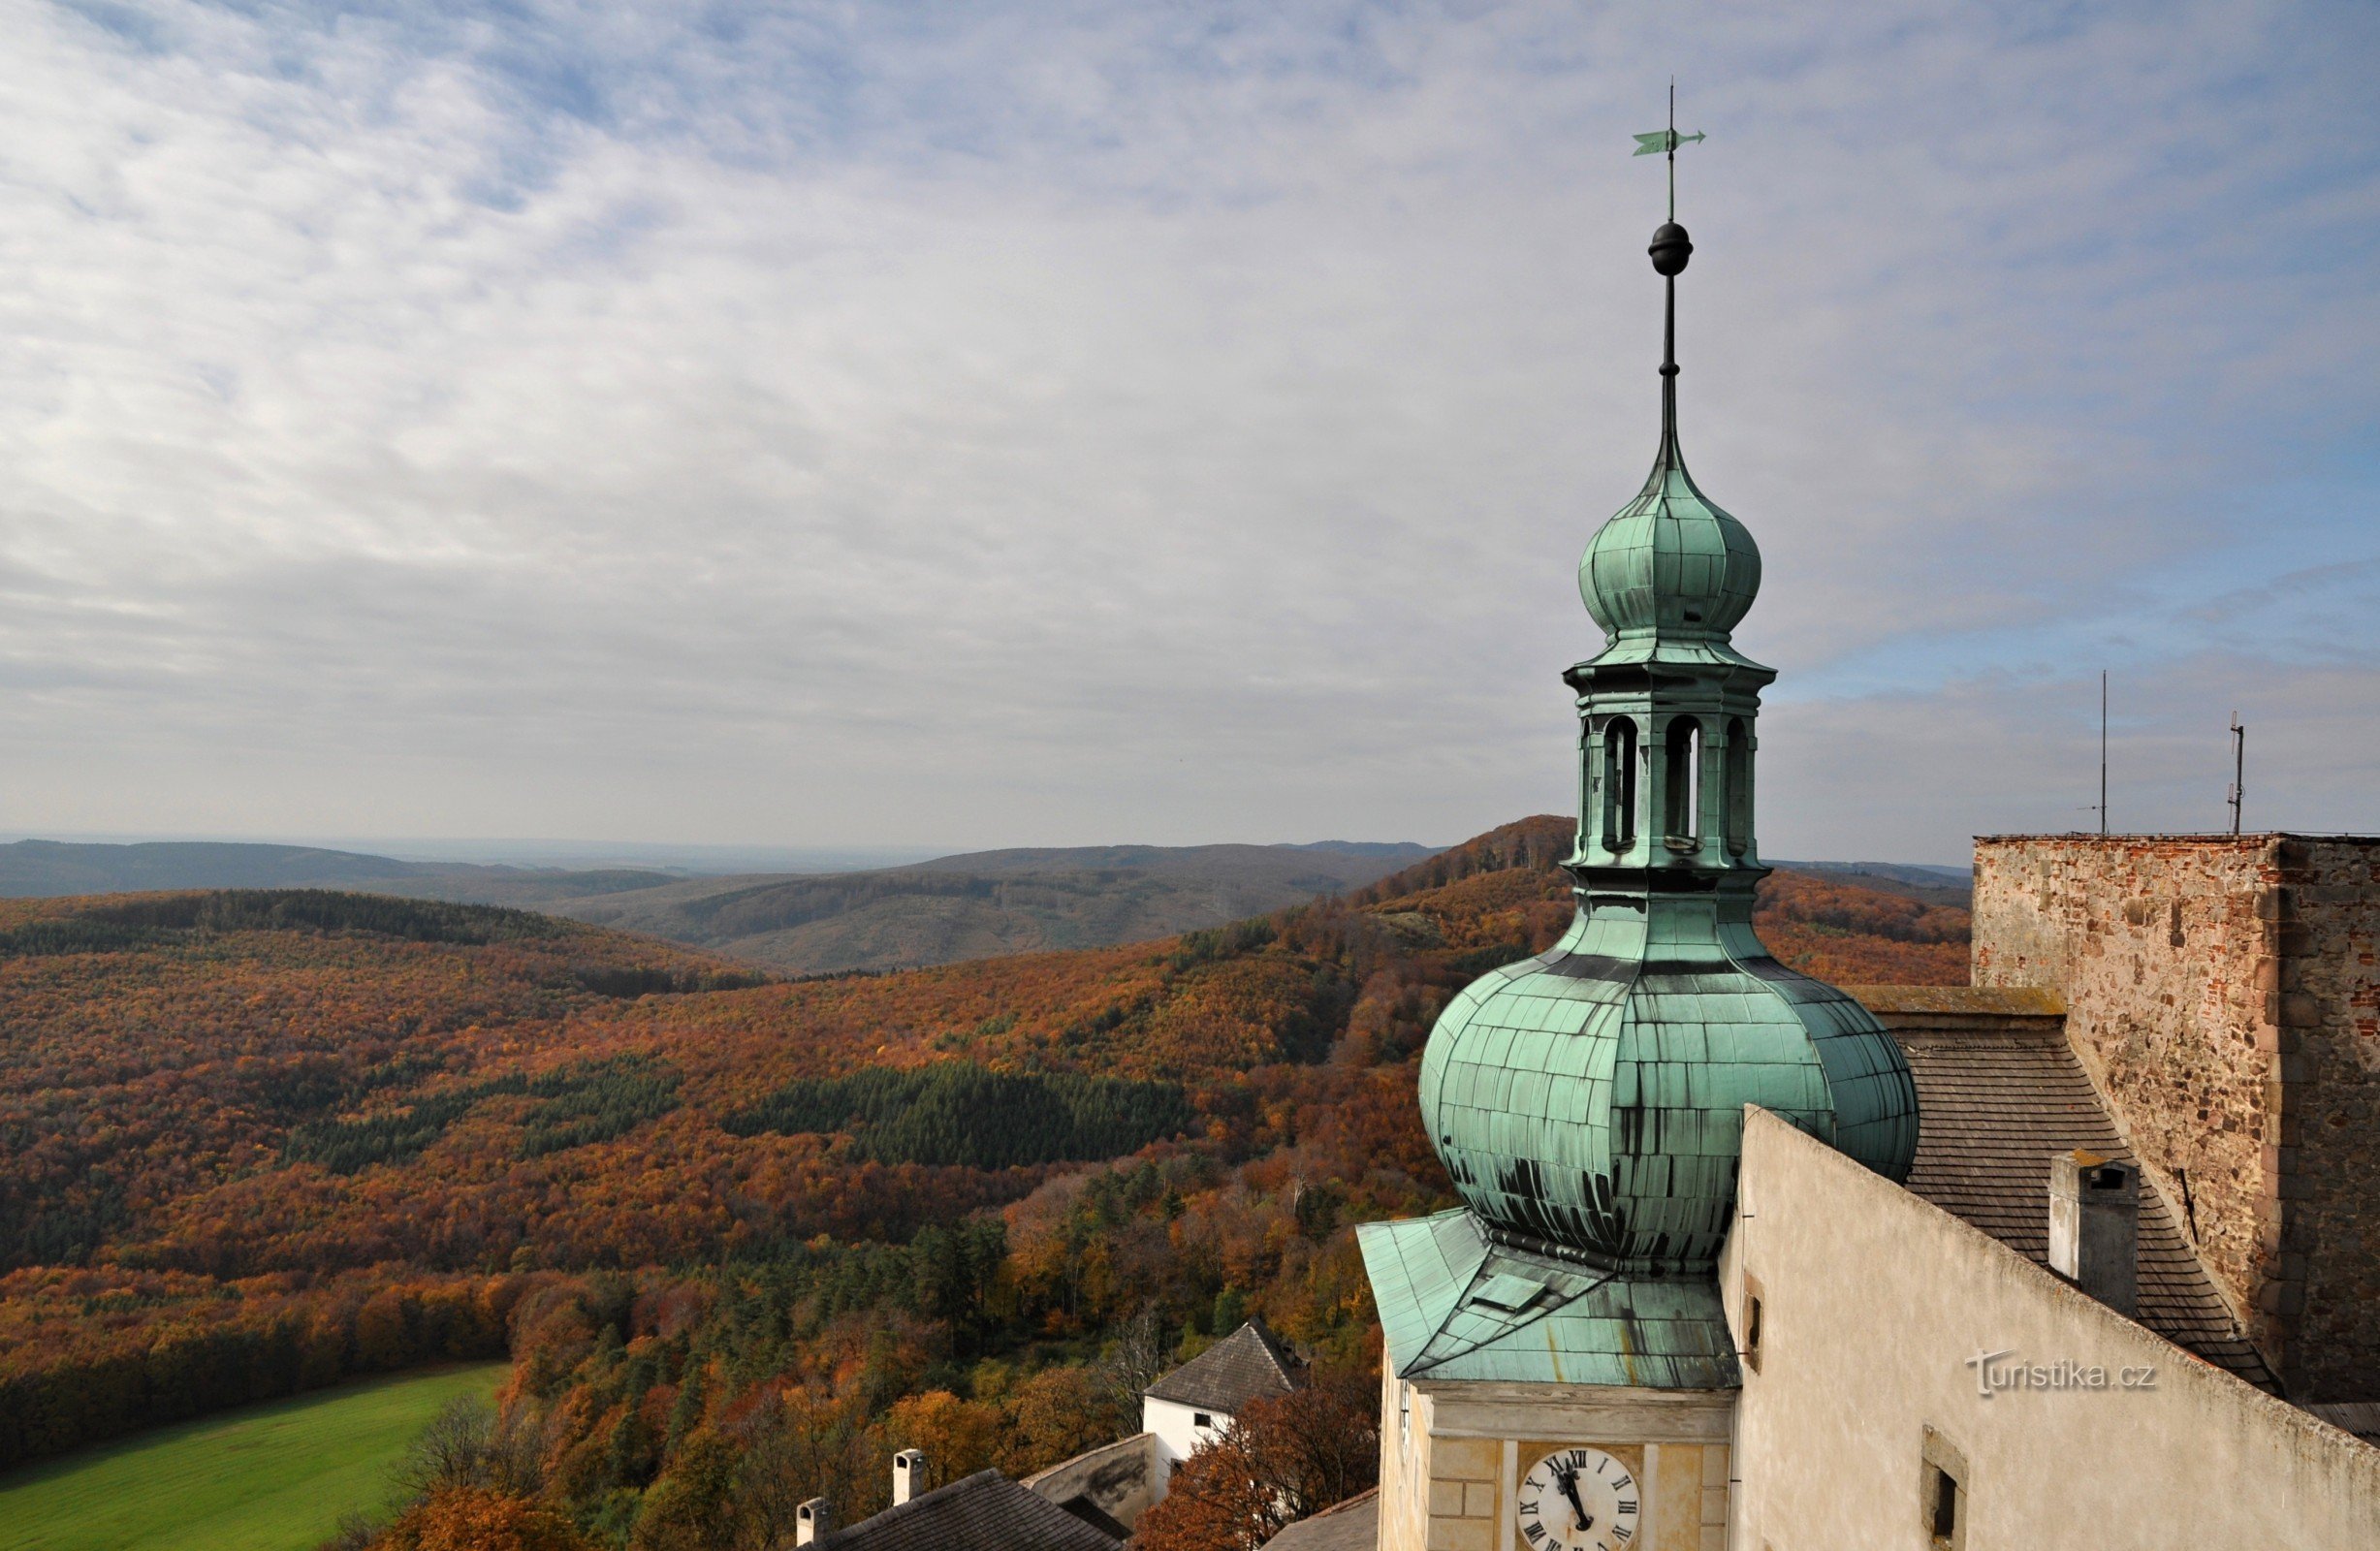 Chřiby (montagnes de Buchlov) : vue depuis la tour du château de Buchlov en direction ouest